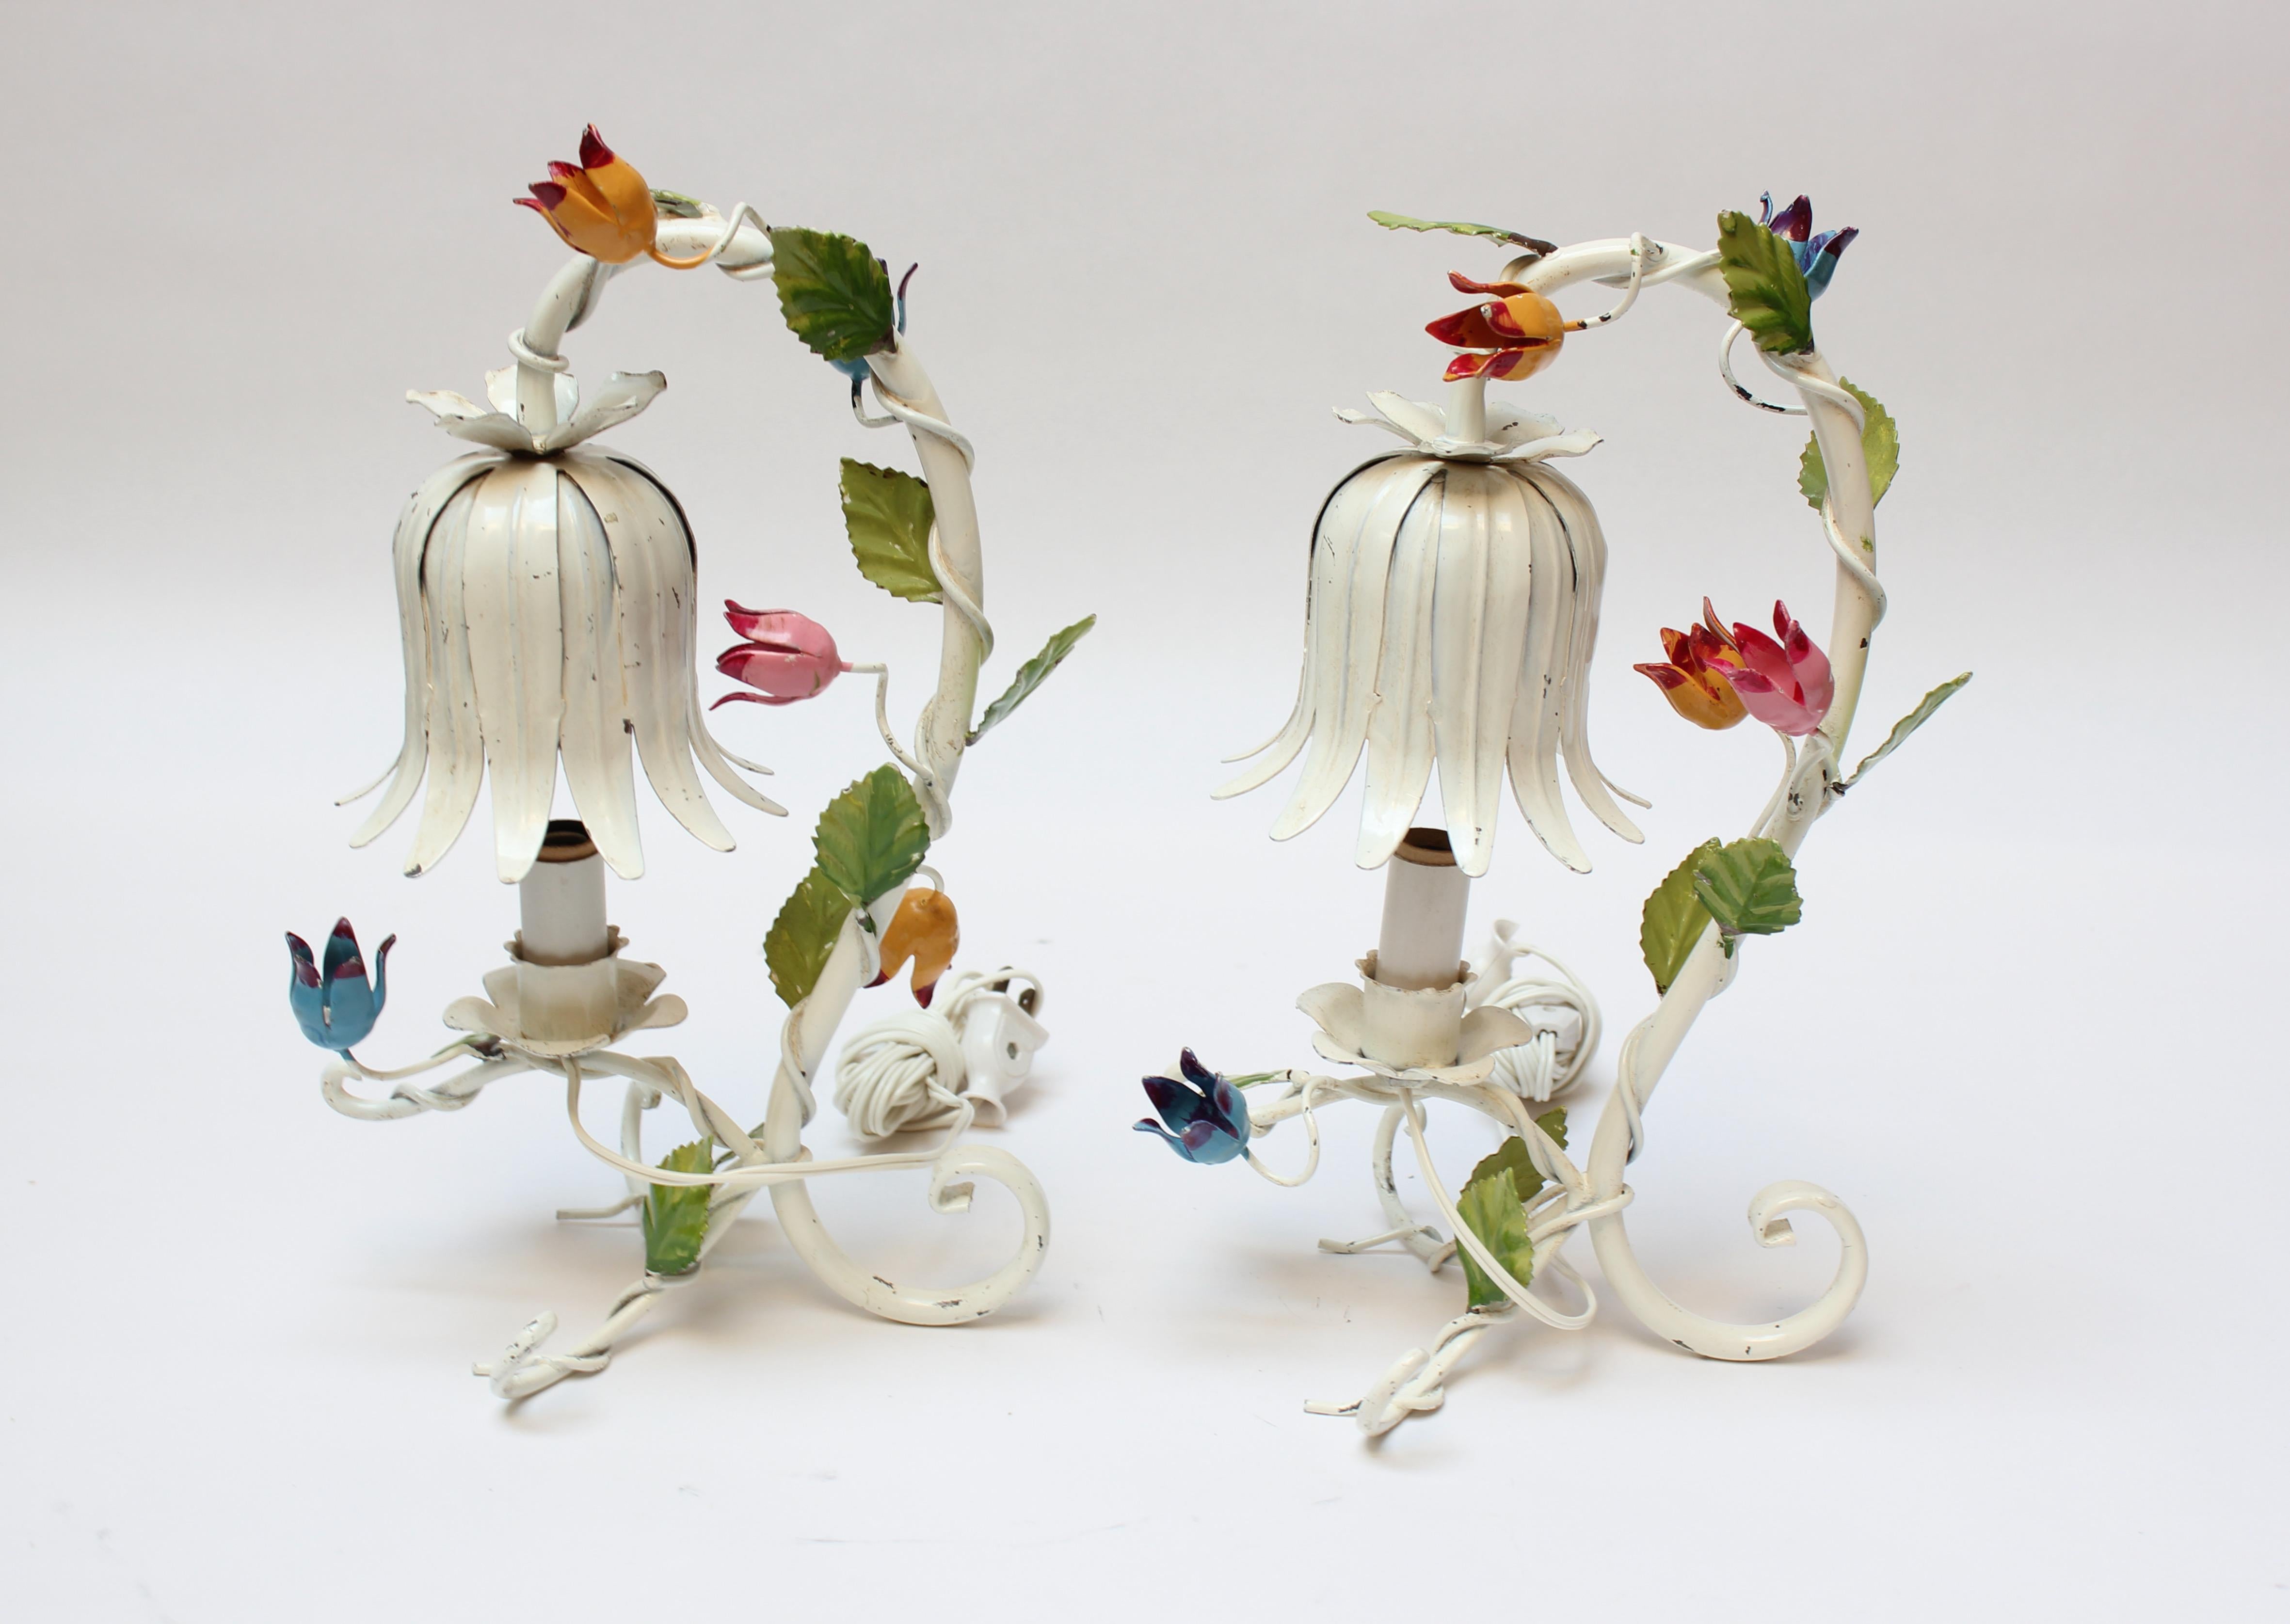 Zwei kleine florentinische Tischlampen aus Keramik (ca. 1950, Italien). Bestehend aus weiß emailliertem Metall mit bunten Blumenornamenten. Originalzustand: natürliche Farbverluste und Patina. 
Leichter Höhenunterschied zwischen den beiden (12,25